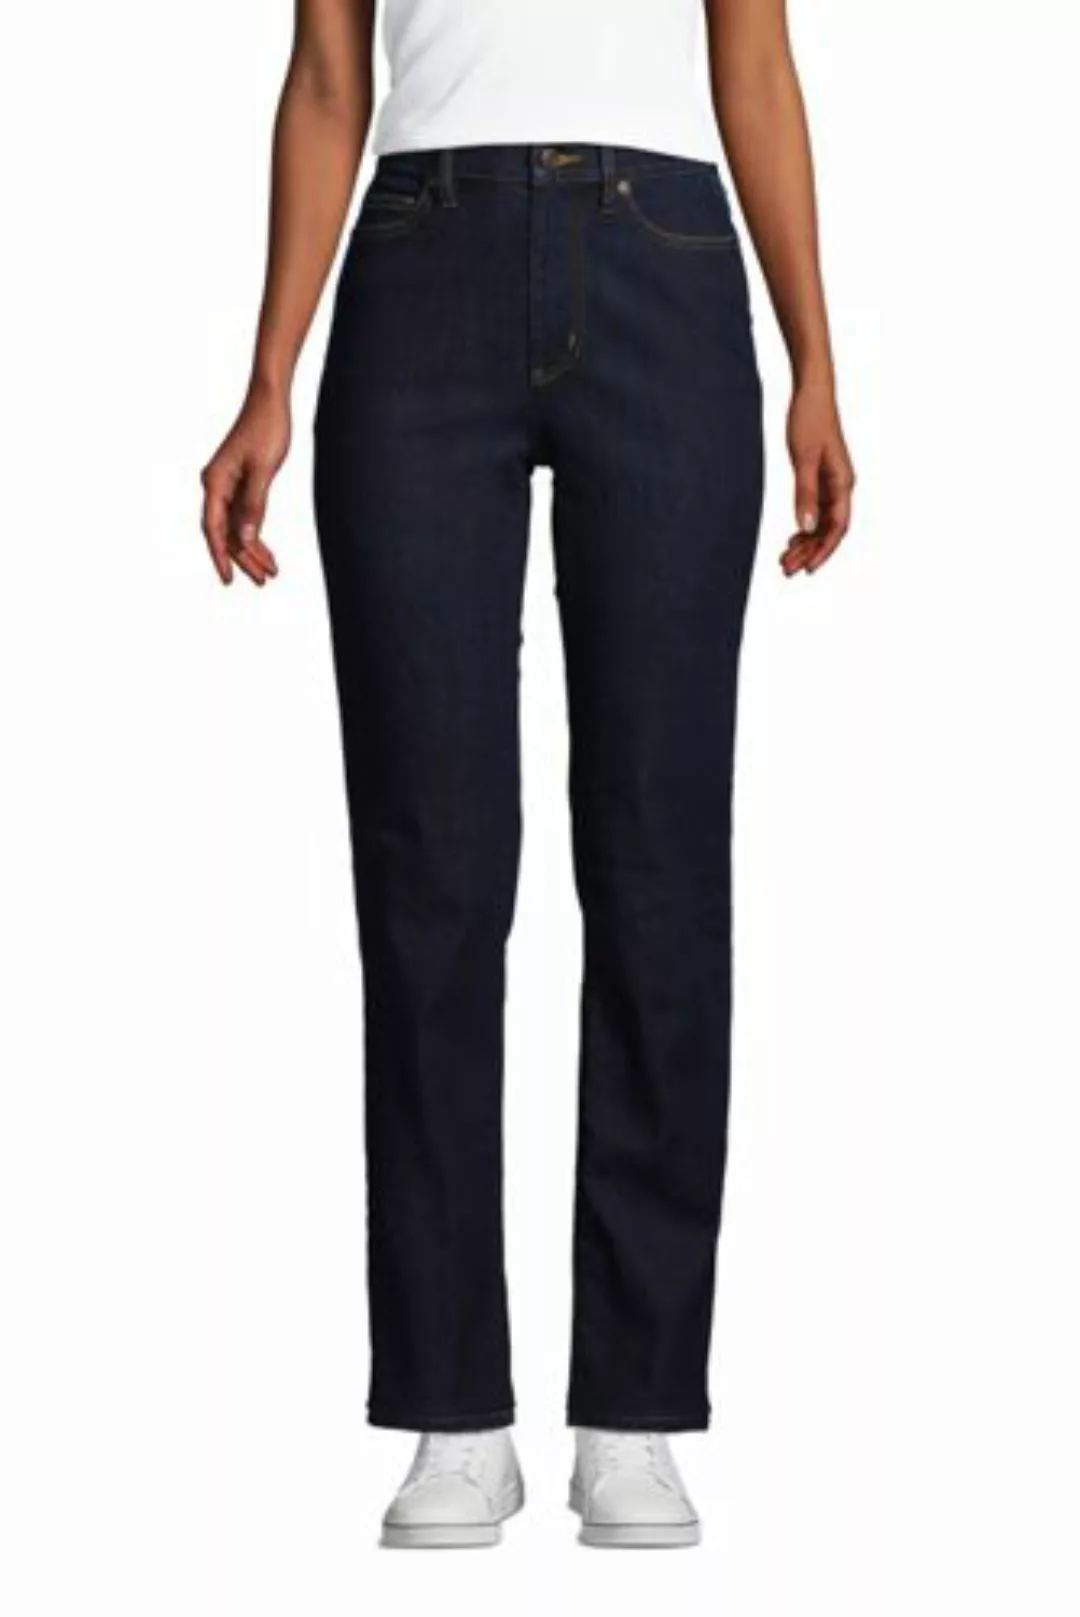 Straight Fit Öko Jeans High Waist, Damen, Größe: 36 30 Normal, Blau, Elasth günstig online kaufen